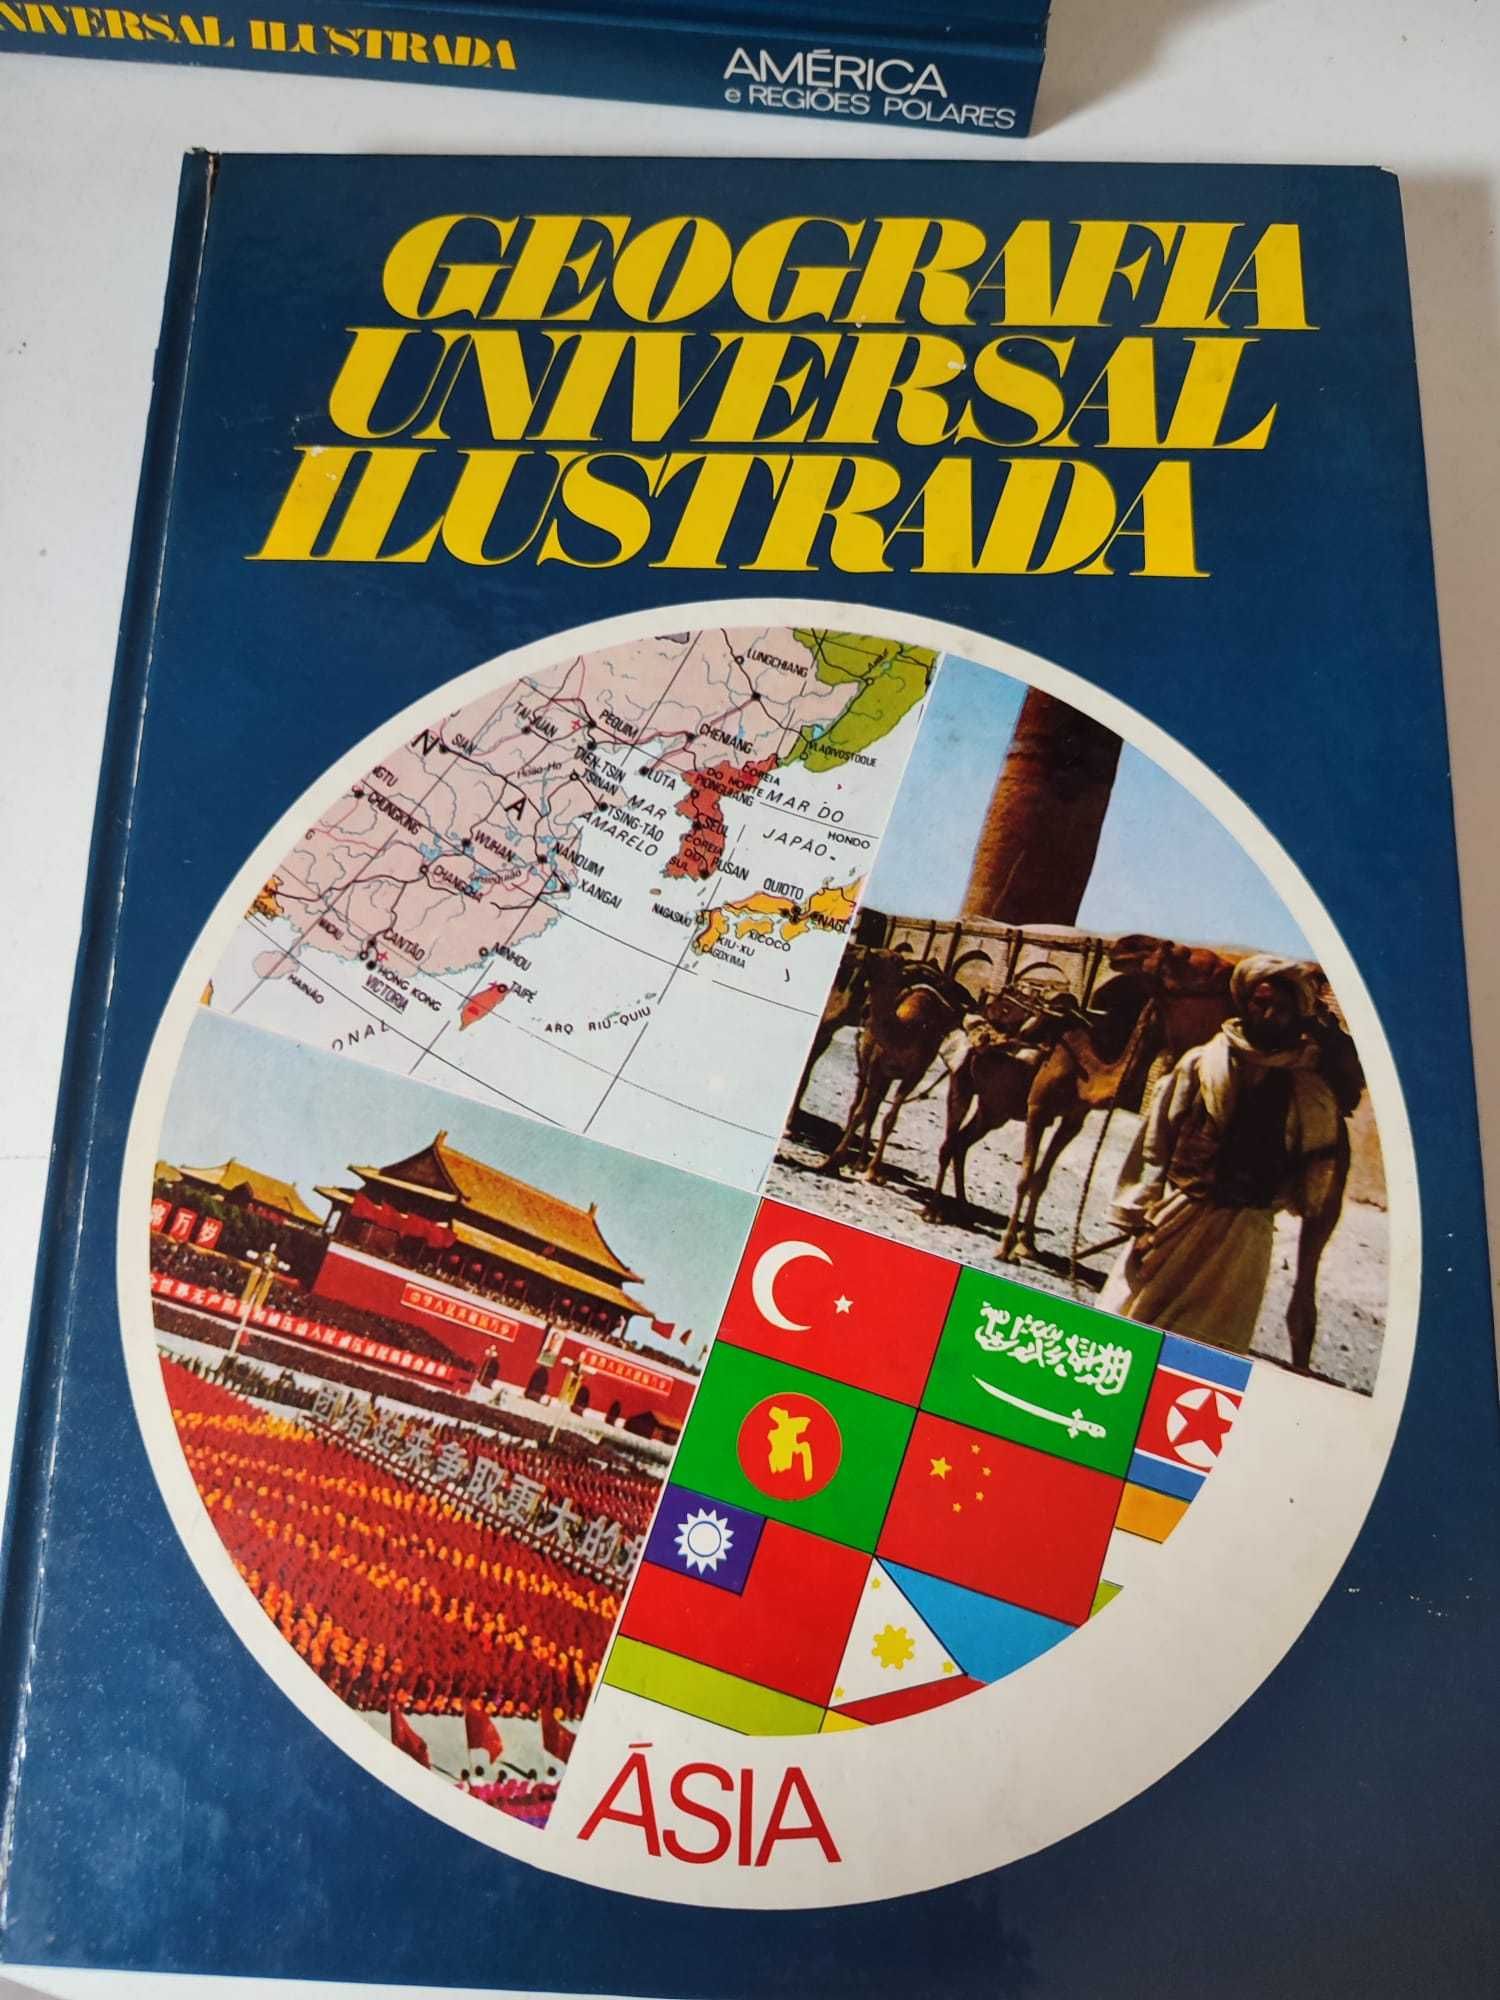 4 Livros de Geografia Universal Ilustrada